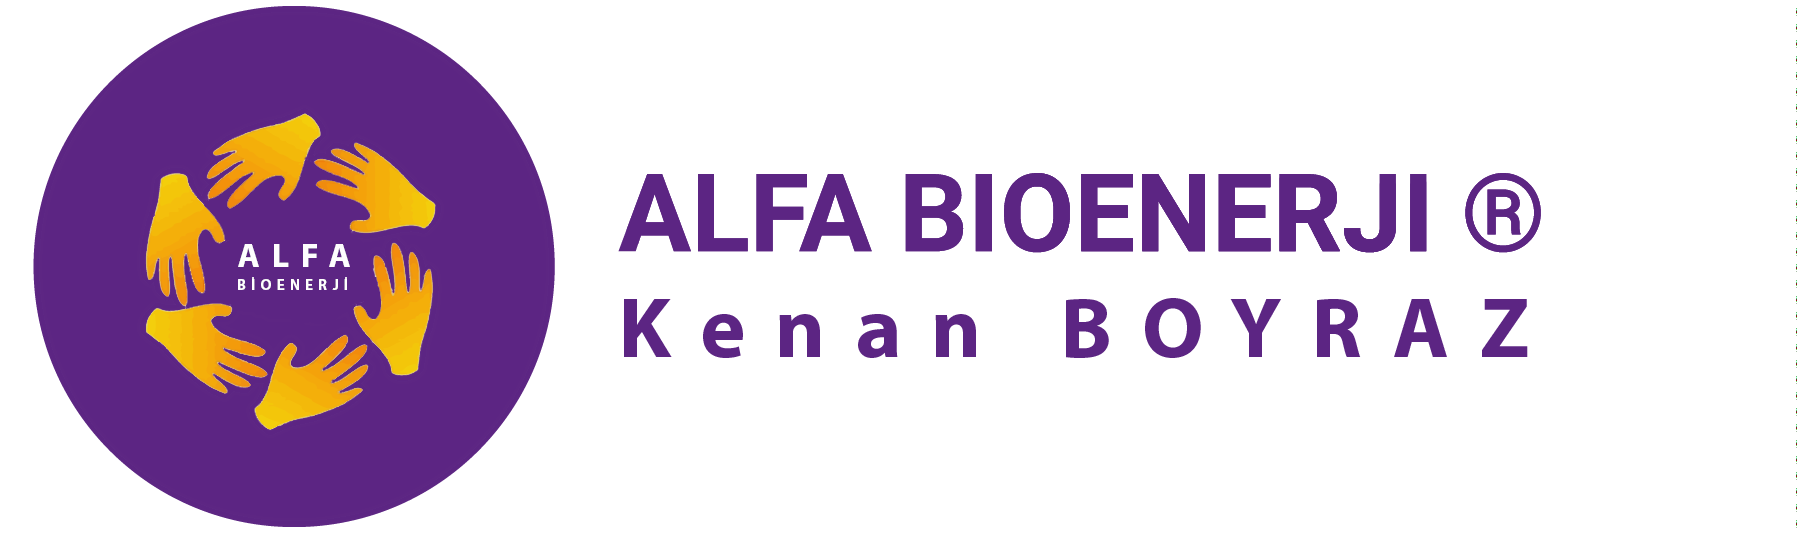 Alfa Bioenerji - ALFA BİOENERJİ® EĞİTİMLERİ ve TERAPİLERİ